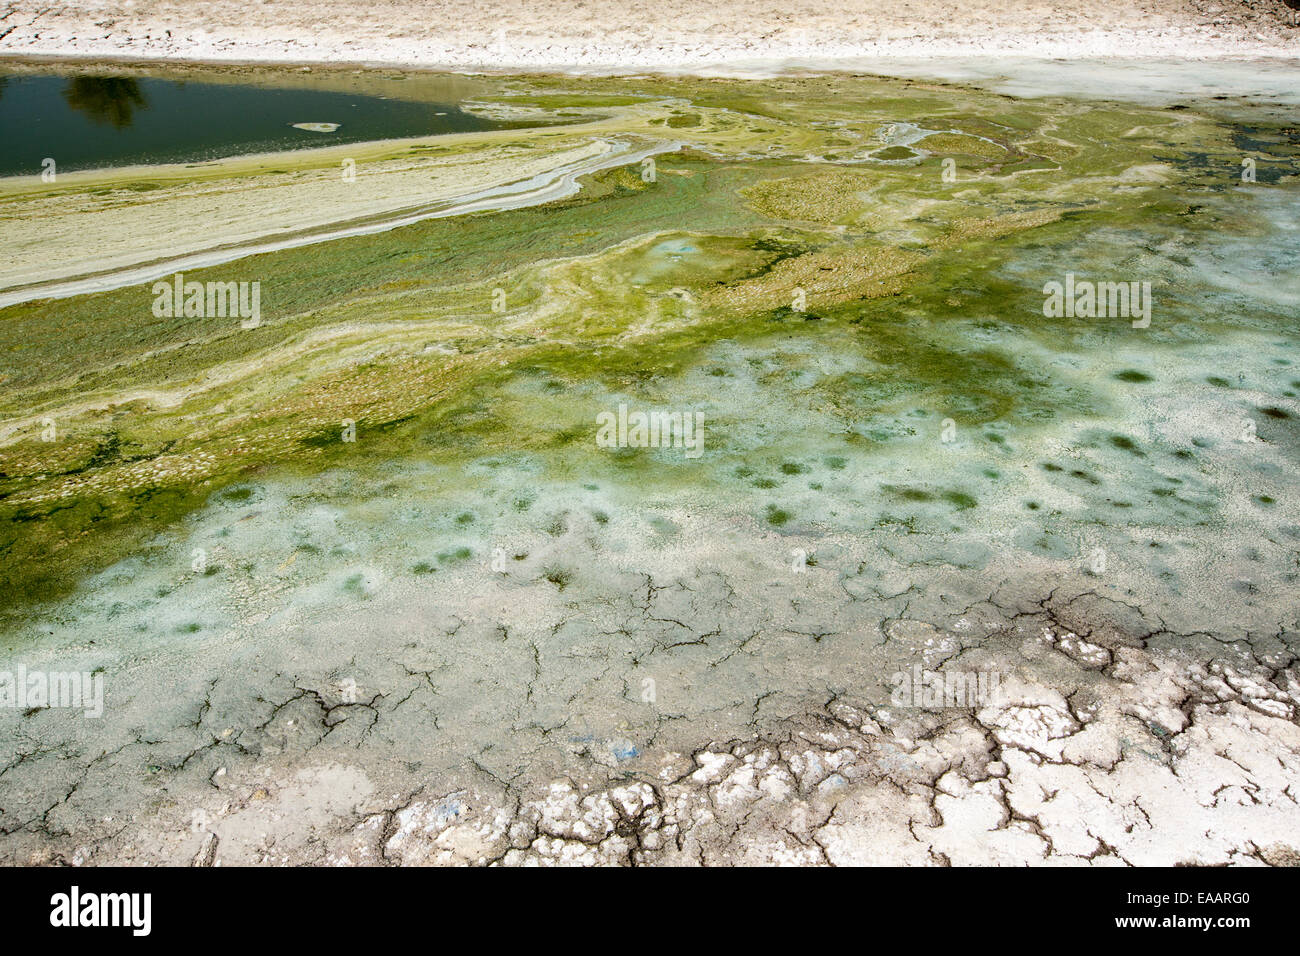 A ausgetrocknet See am Tehachapi Pass, Kalifornien, USA. Kalifornien ist in der Mitte eine vier Jahre lange Dürre. Stockfoto